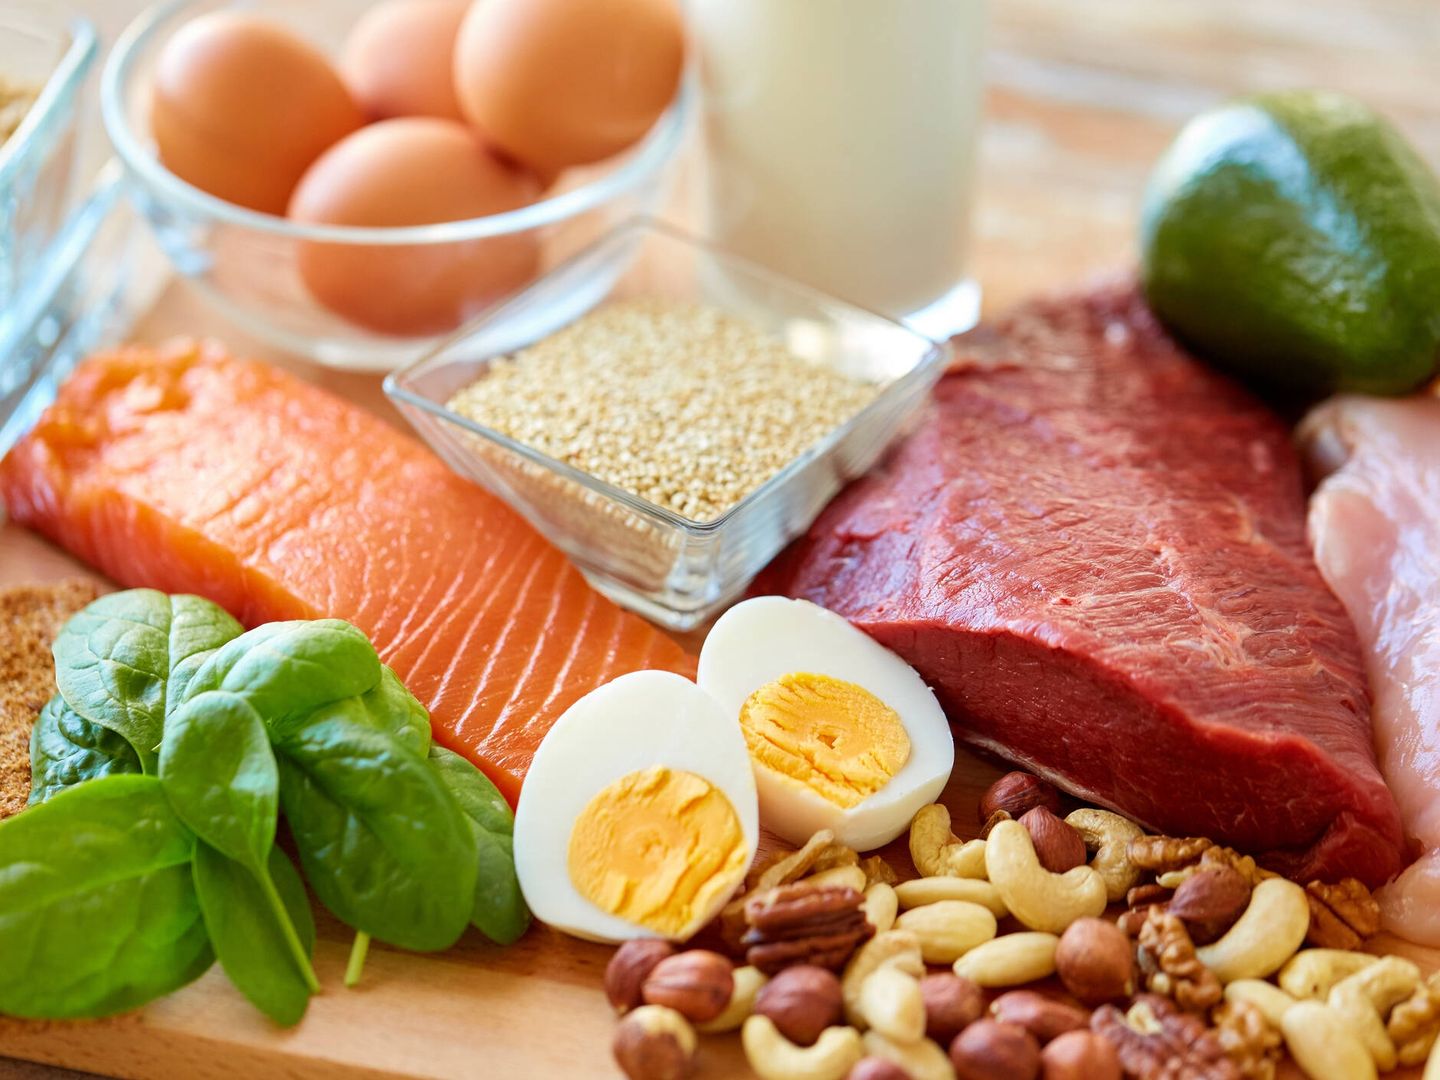 Los alimentos con alto contenido en proteínas son los más saciantes. (iStock)